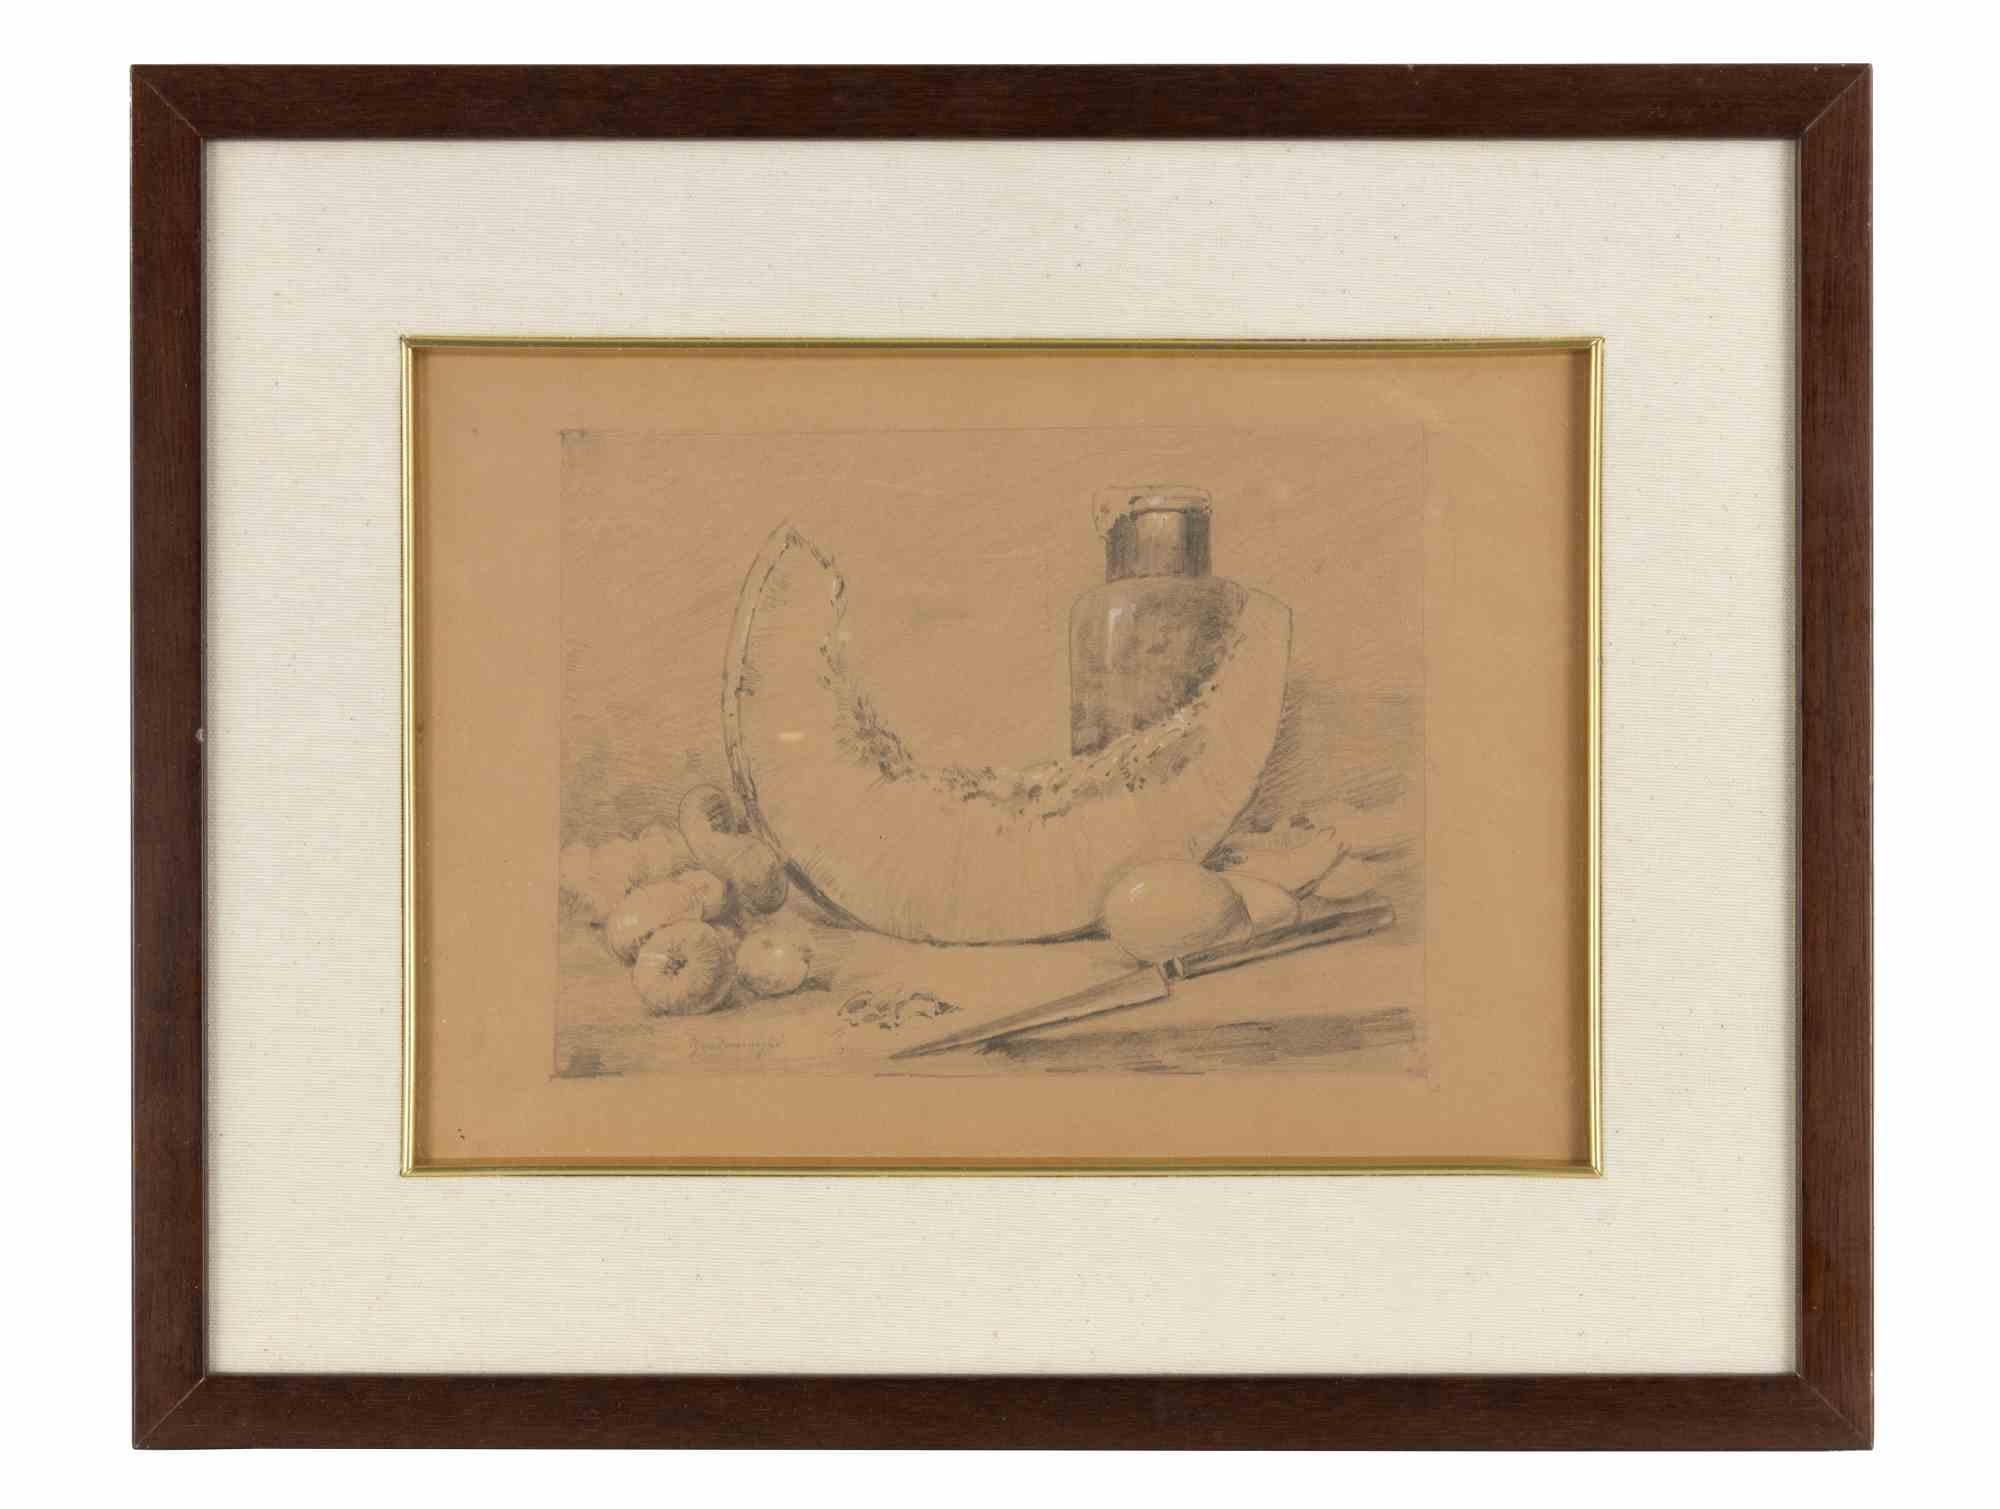 Das Stilleben ist ein originelles modernes Kunstwerk des Künstlers Federico Zandomeneghi (1841-1917).

Bleistiftzeichnung auf Papier.

Vom Künstler am unteren Rand handsigniert.

Einschließlich Rahmen:  36 x 45 cm

Lassen Sie sich dieses Meisterwerk